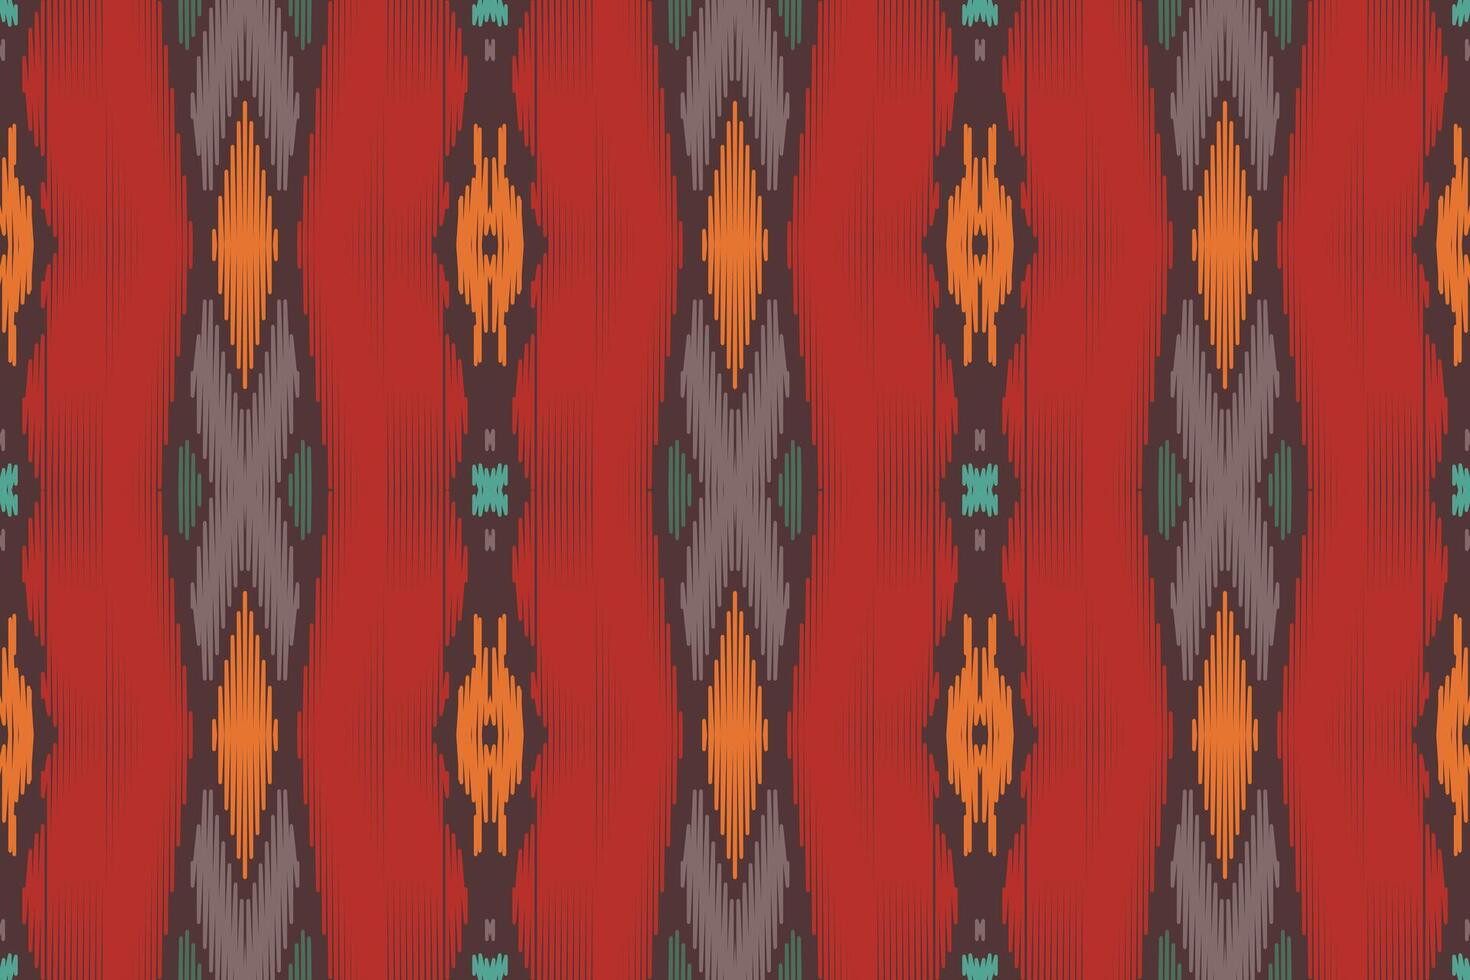 tela ikat de patrones sin fisuras estilo de bordado tradicional étnico geométrico. diseño para fondo, alfombra, estera, sarong, ropa, ilustración vectorial. vector